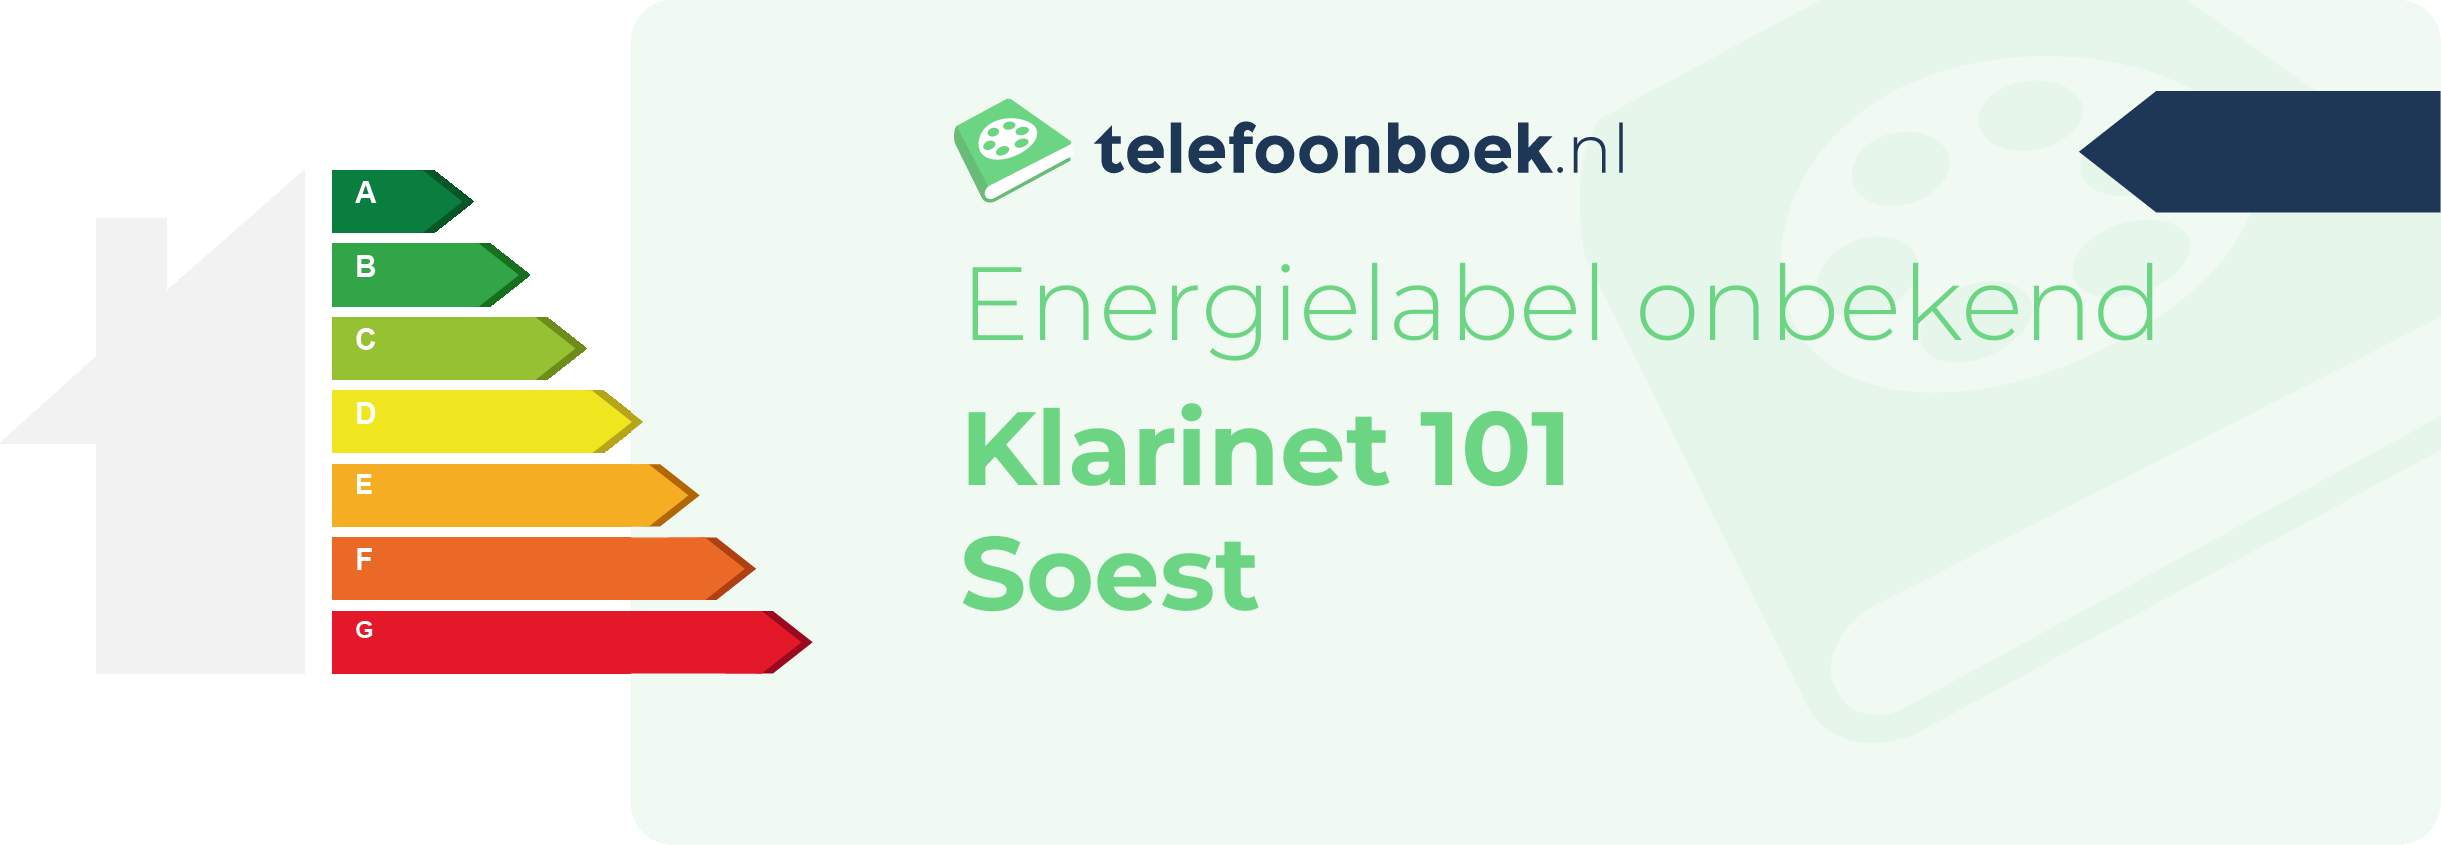 Energielabel Klarinet 101 Soest